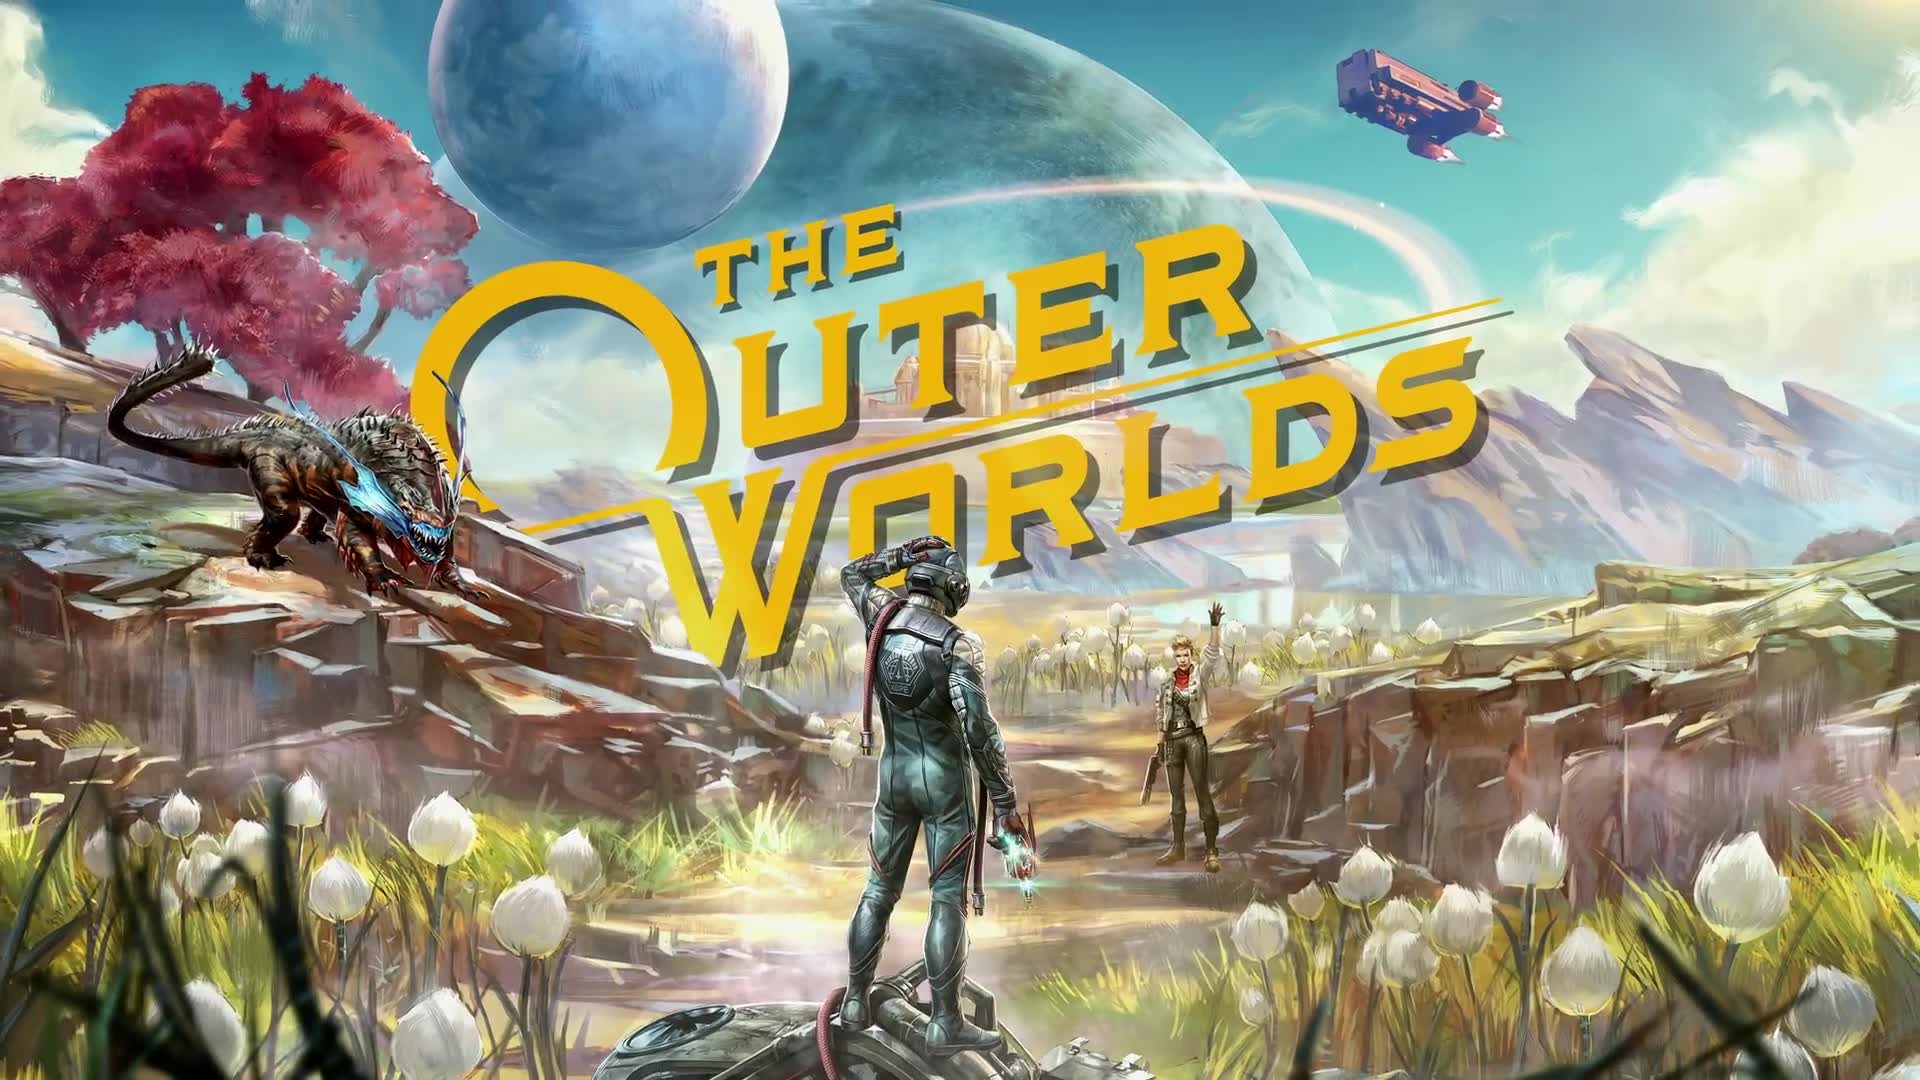 Starfield’dan, The Outer Worlds’e uzaya yolculuk temalı oyunlar